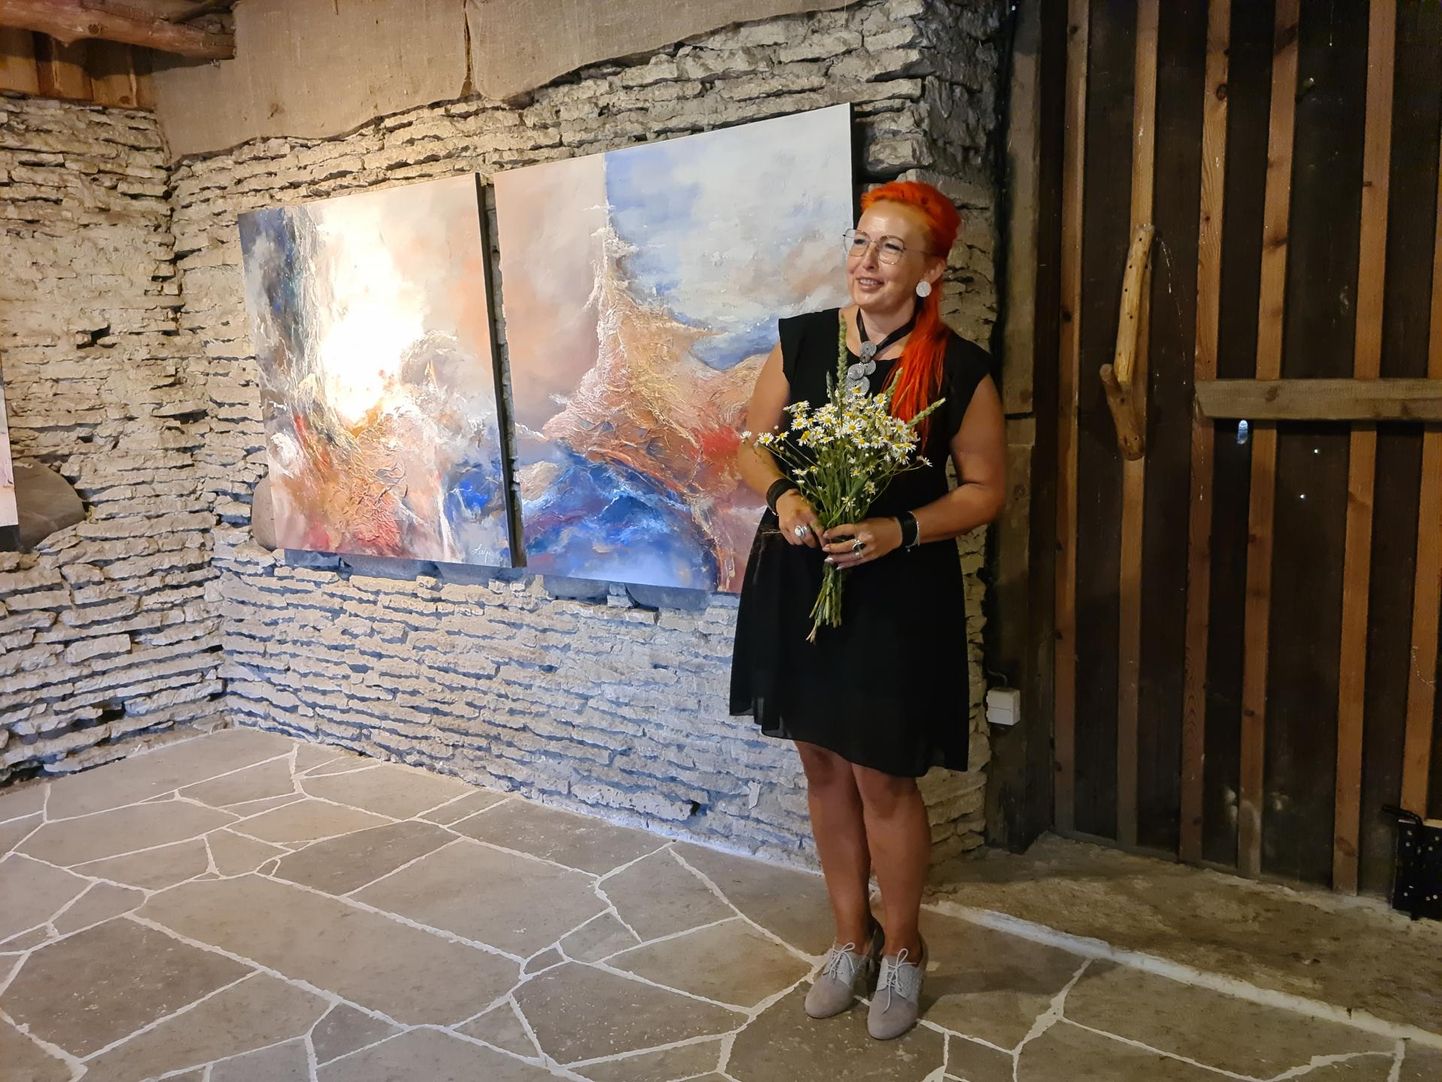 Kunstnik Leekpea näituse "Kulgemine" avamine Karepal Sagritsa muuseumis mullu juulis.